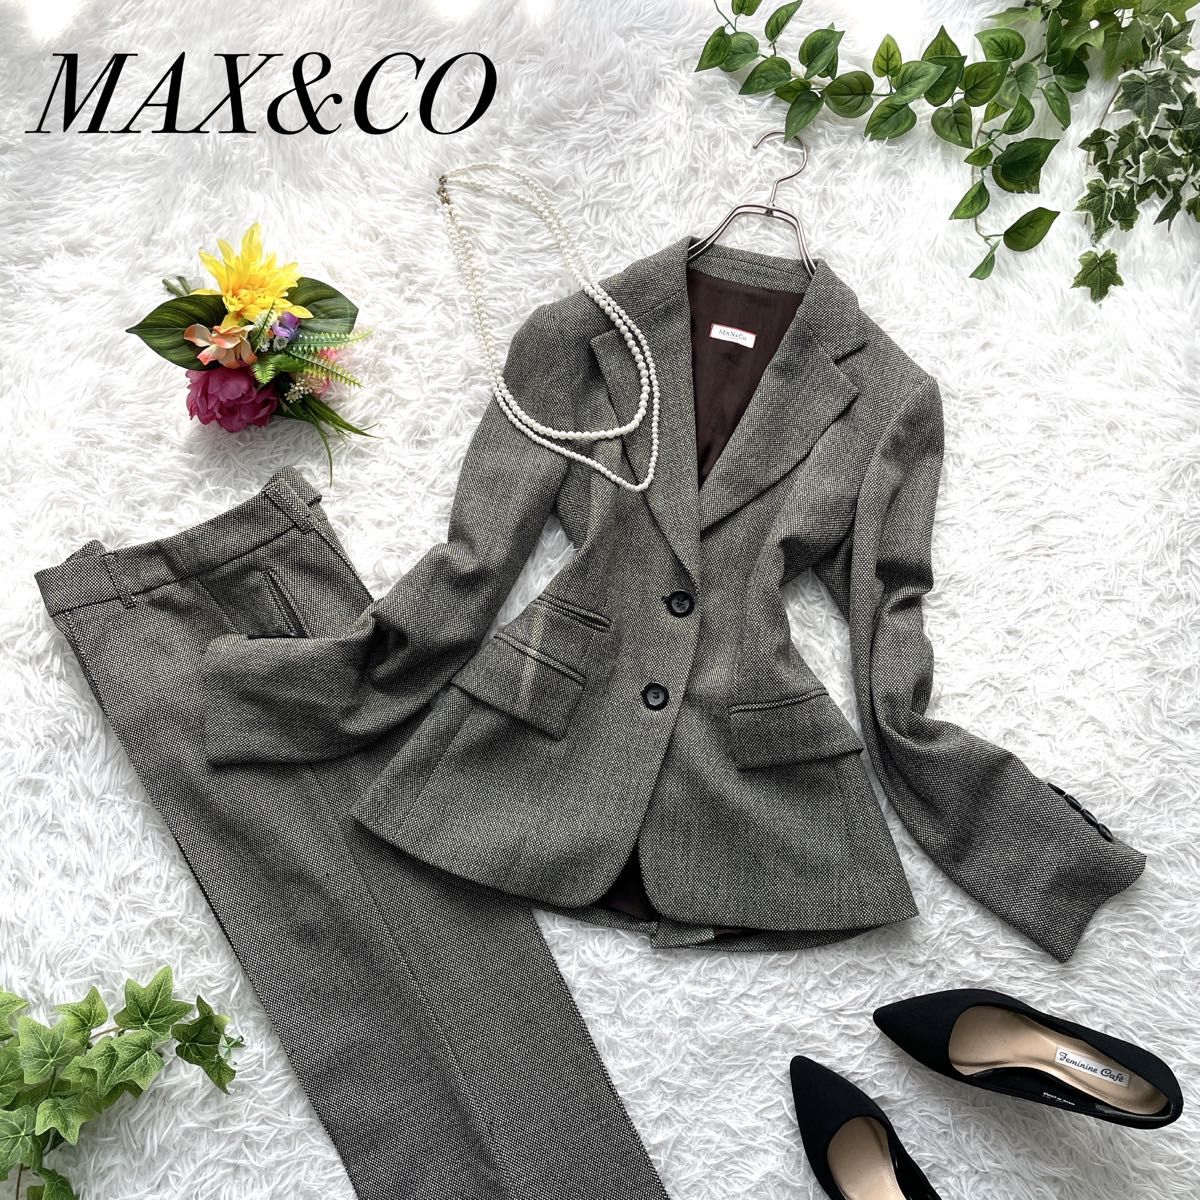 イタリア製 Max&Co マックスアンドコー セットアップ スーツ 